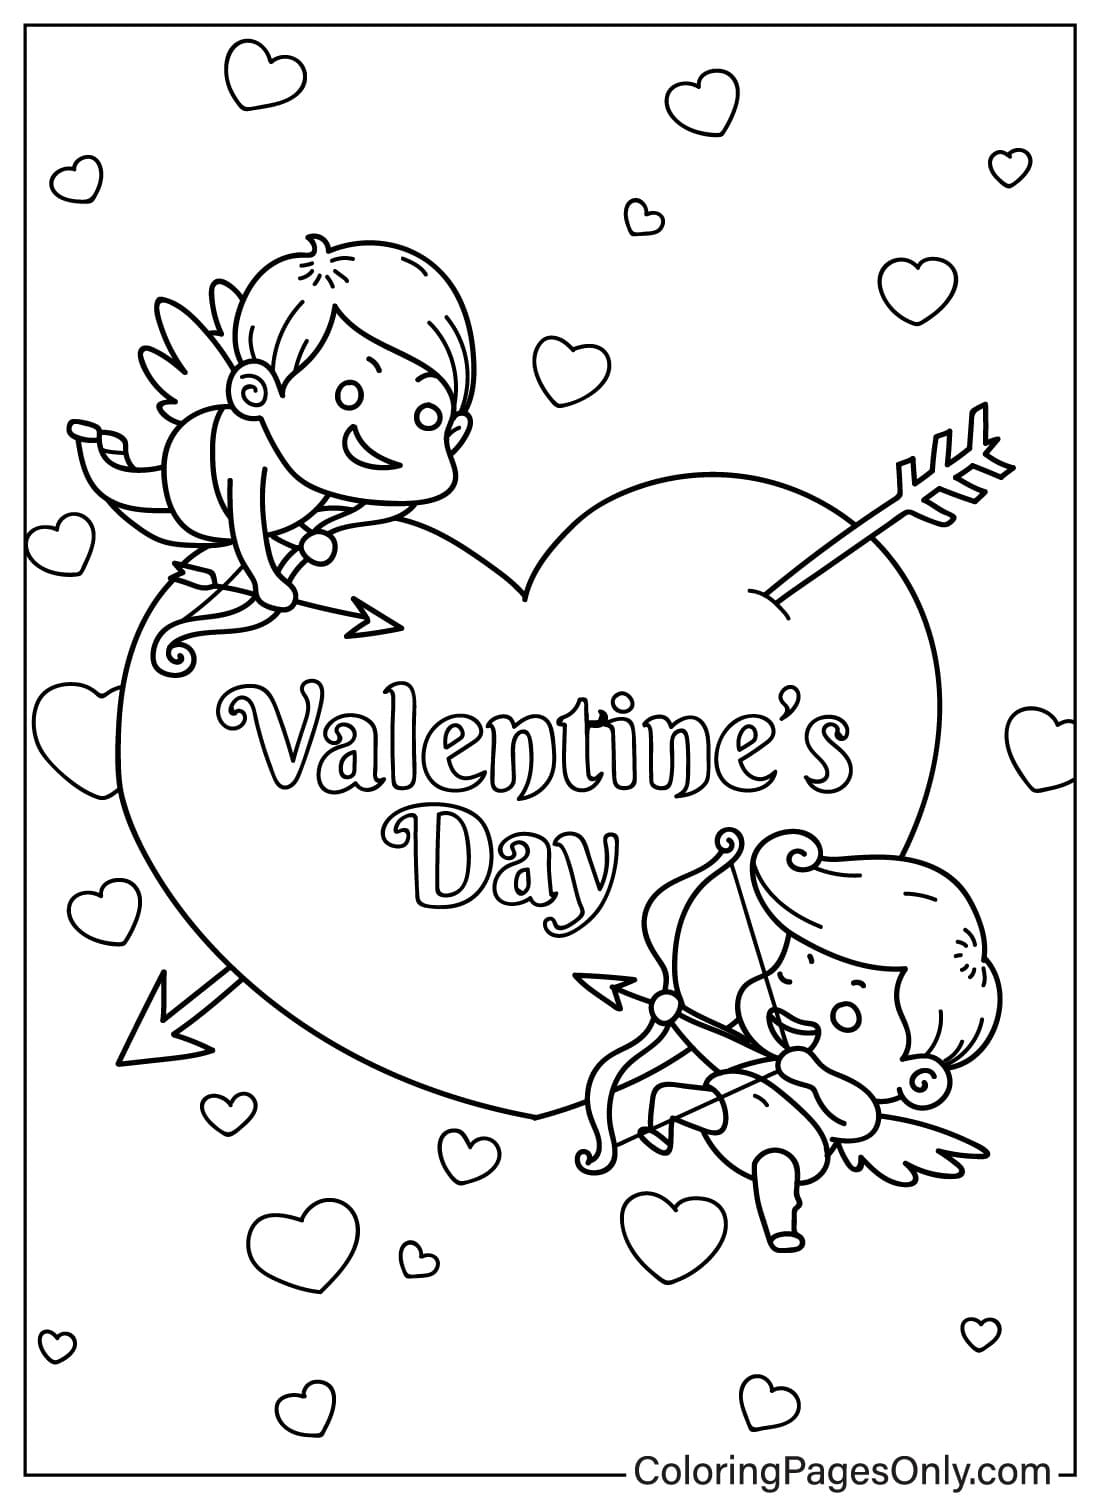 Página para colorear del Día de San Valentín de Cupido del Día de San Valentín